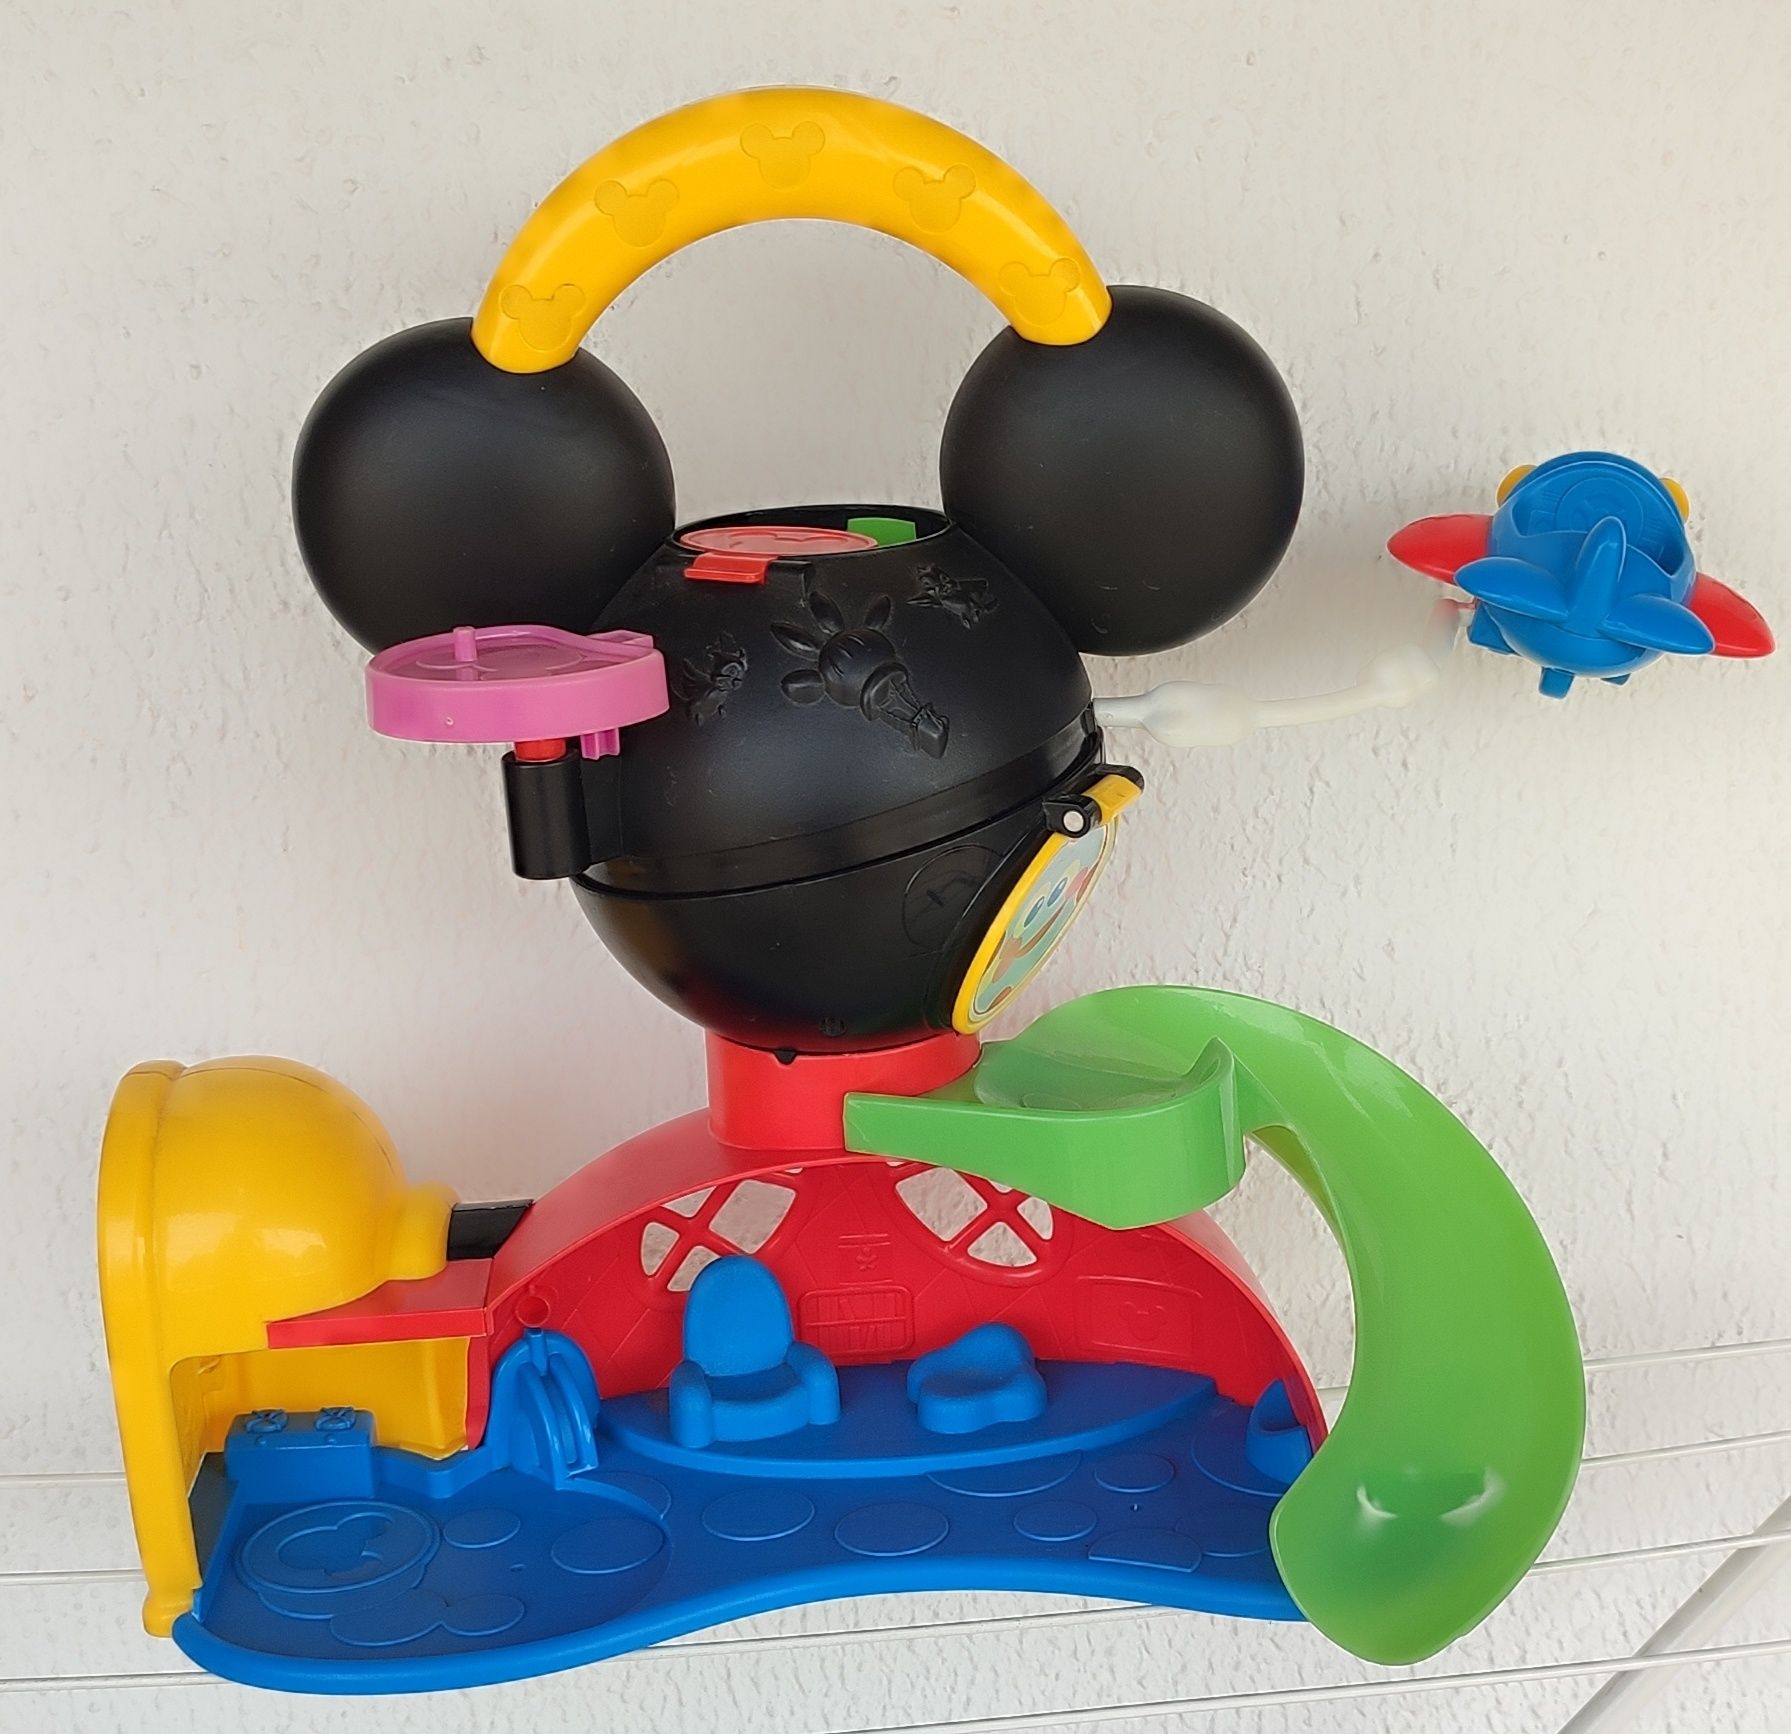 Casa do Mickey Mouse